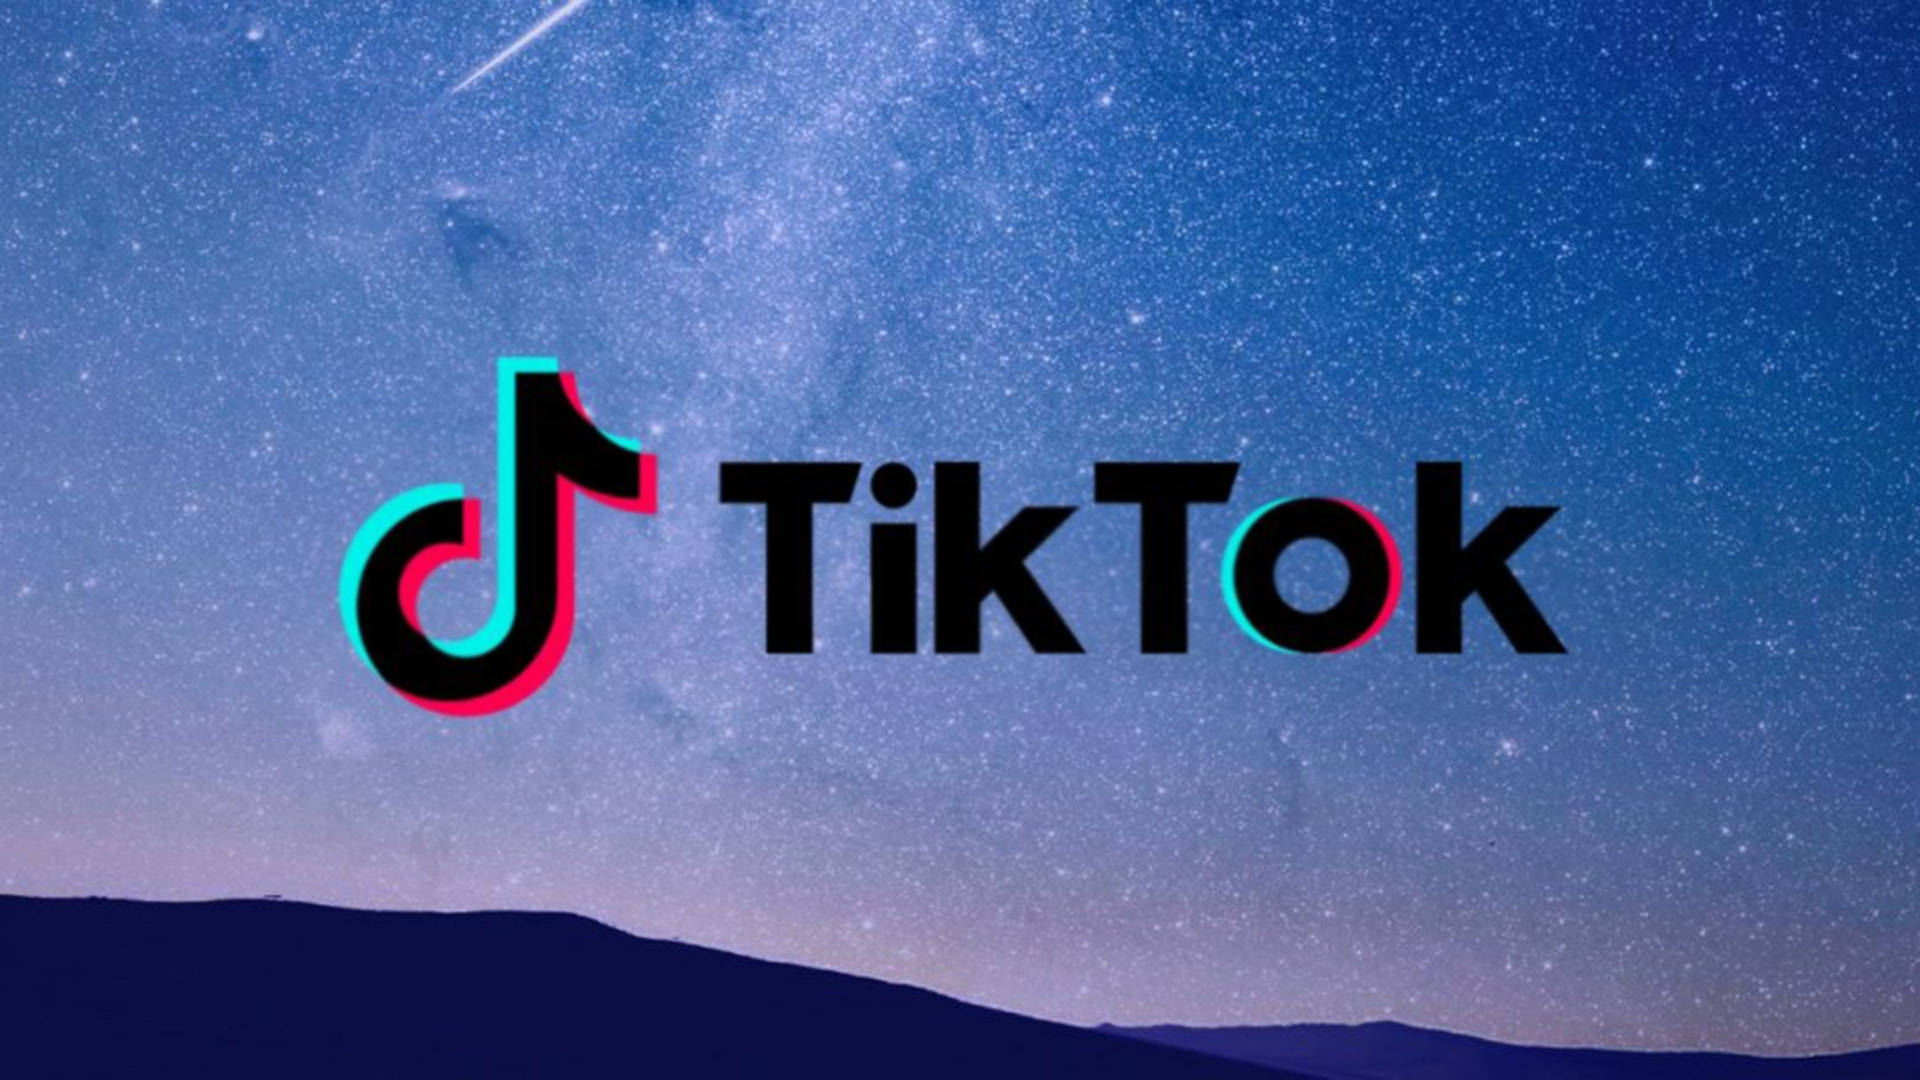 Tiktok Logo Night Sky Landscape Background